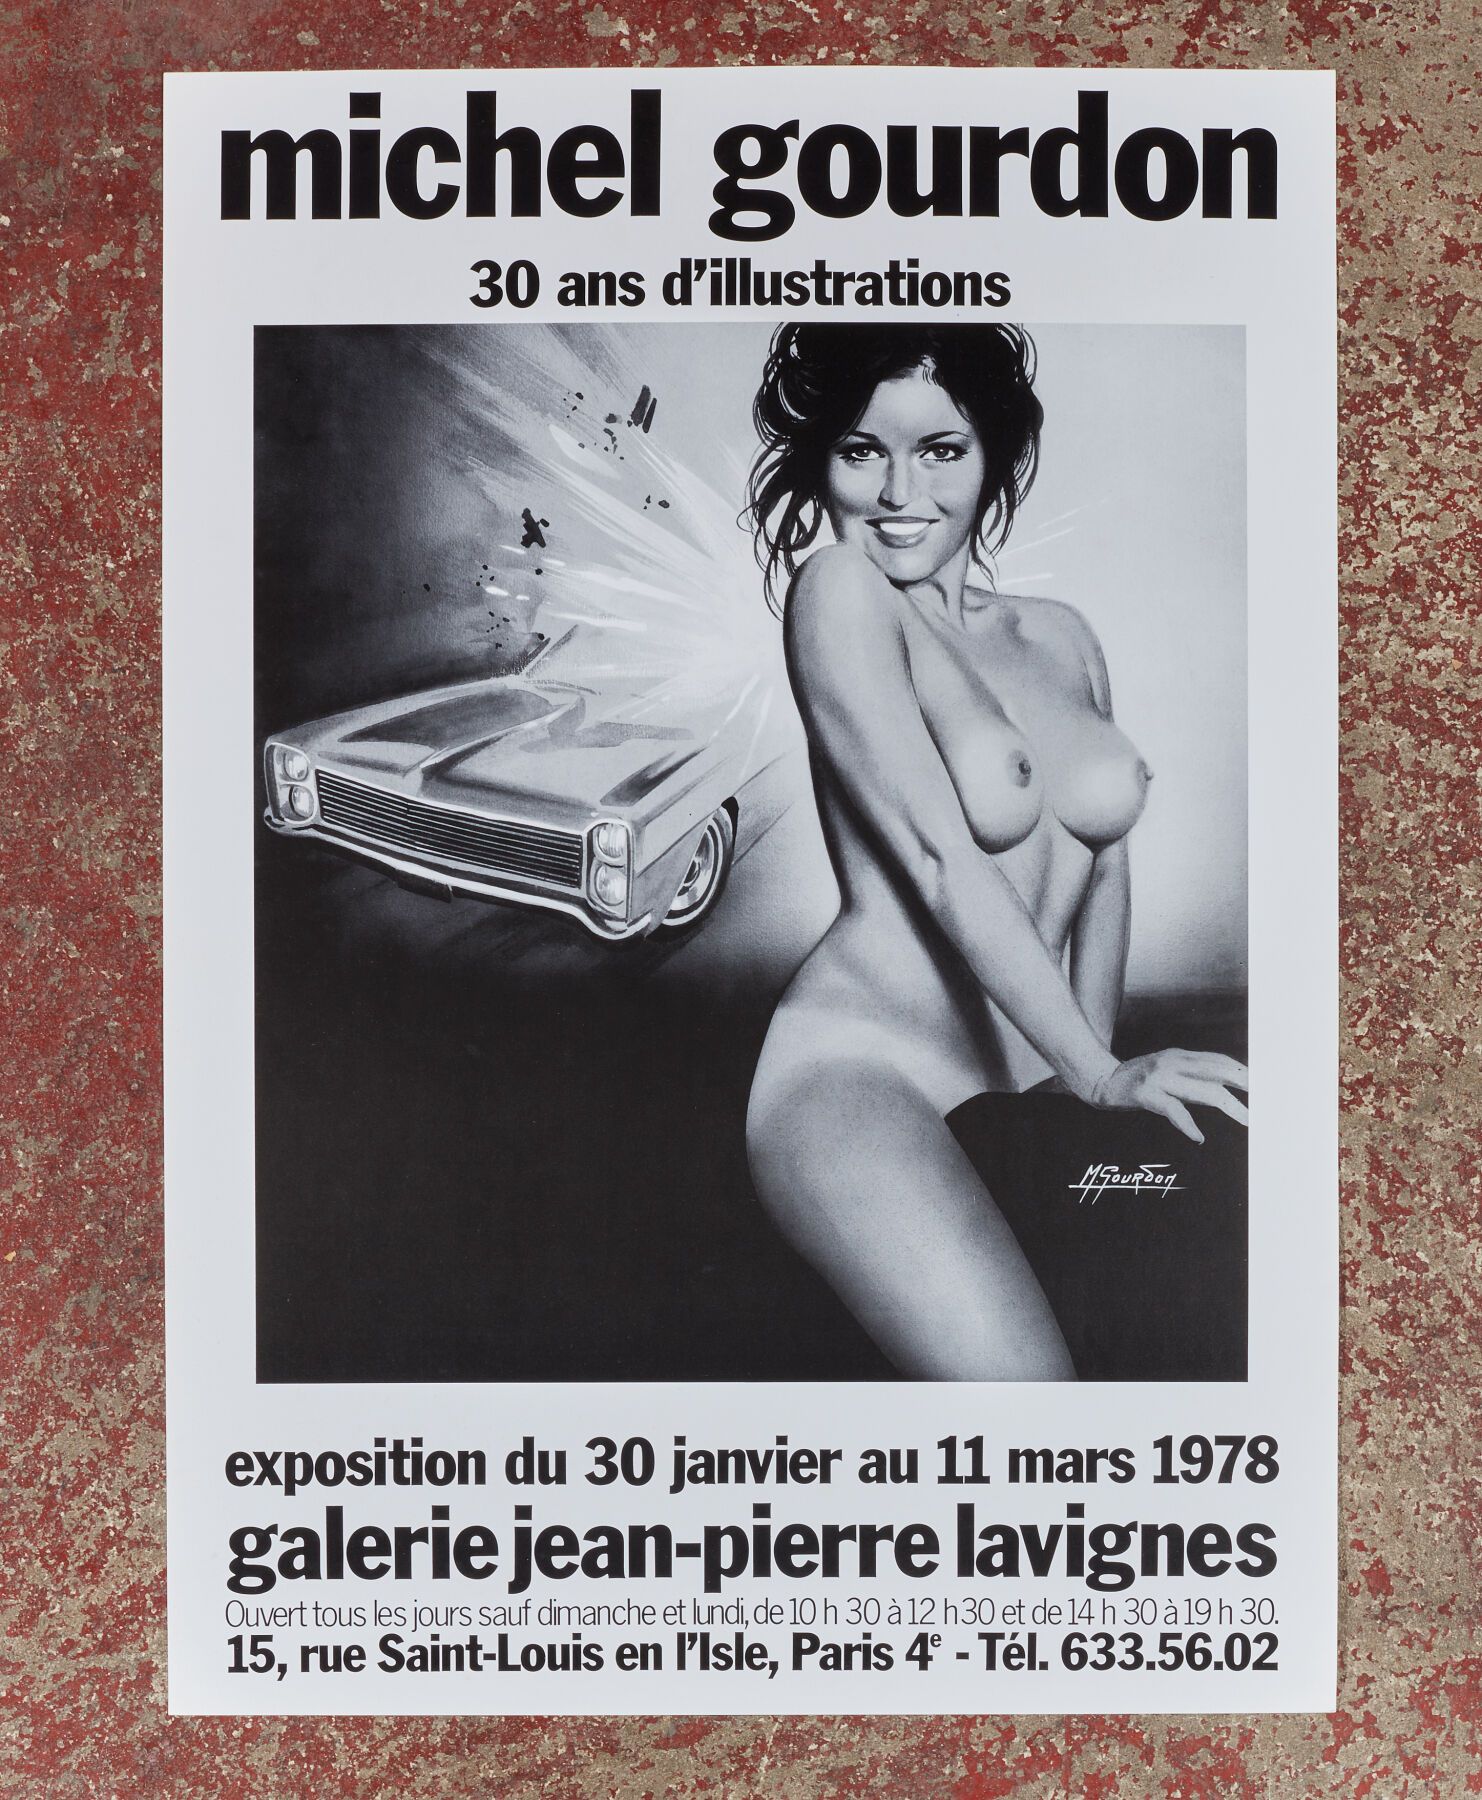 Null Michel GOURDON (1925 - 2011).
30 años de ilustraciones - 1978?
Cartel para &hellip;